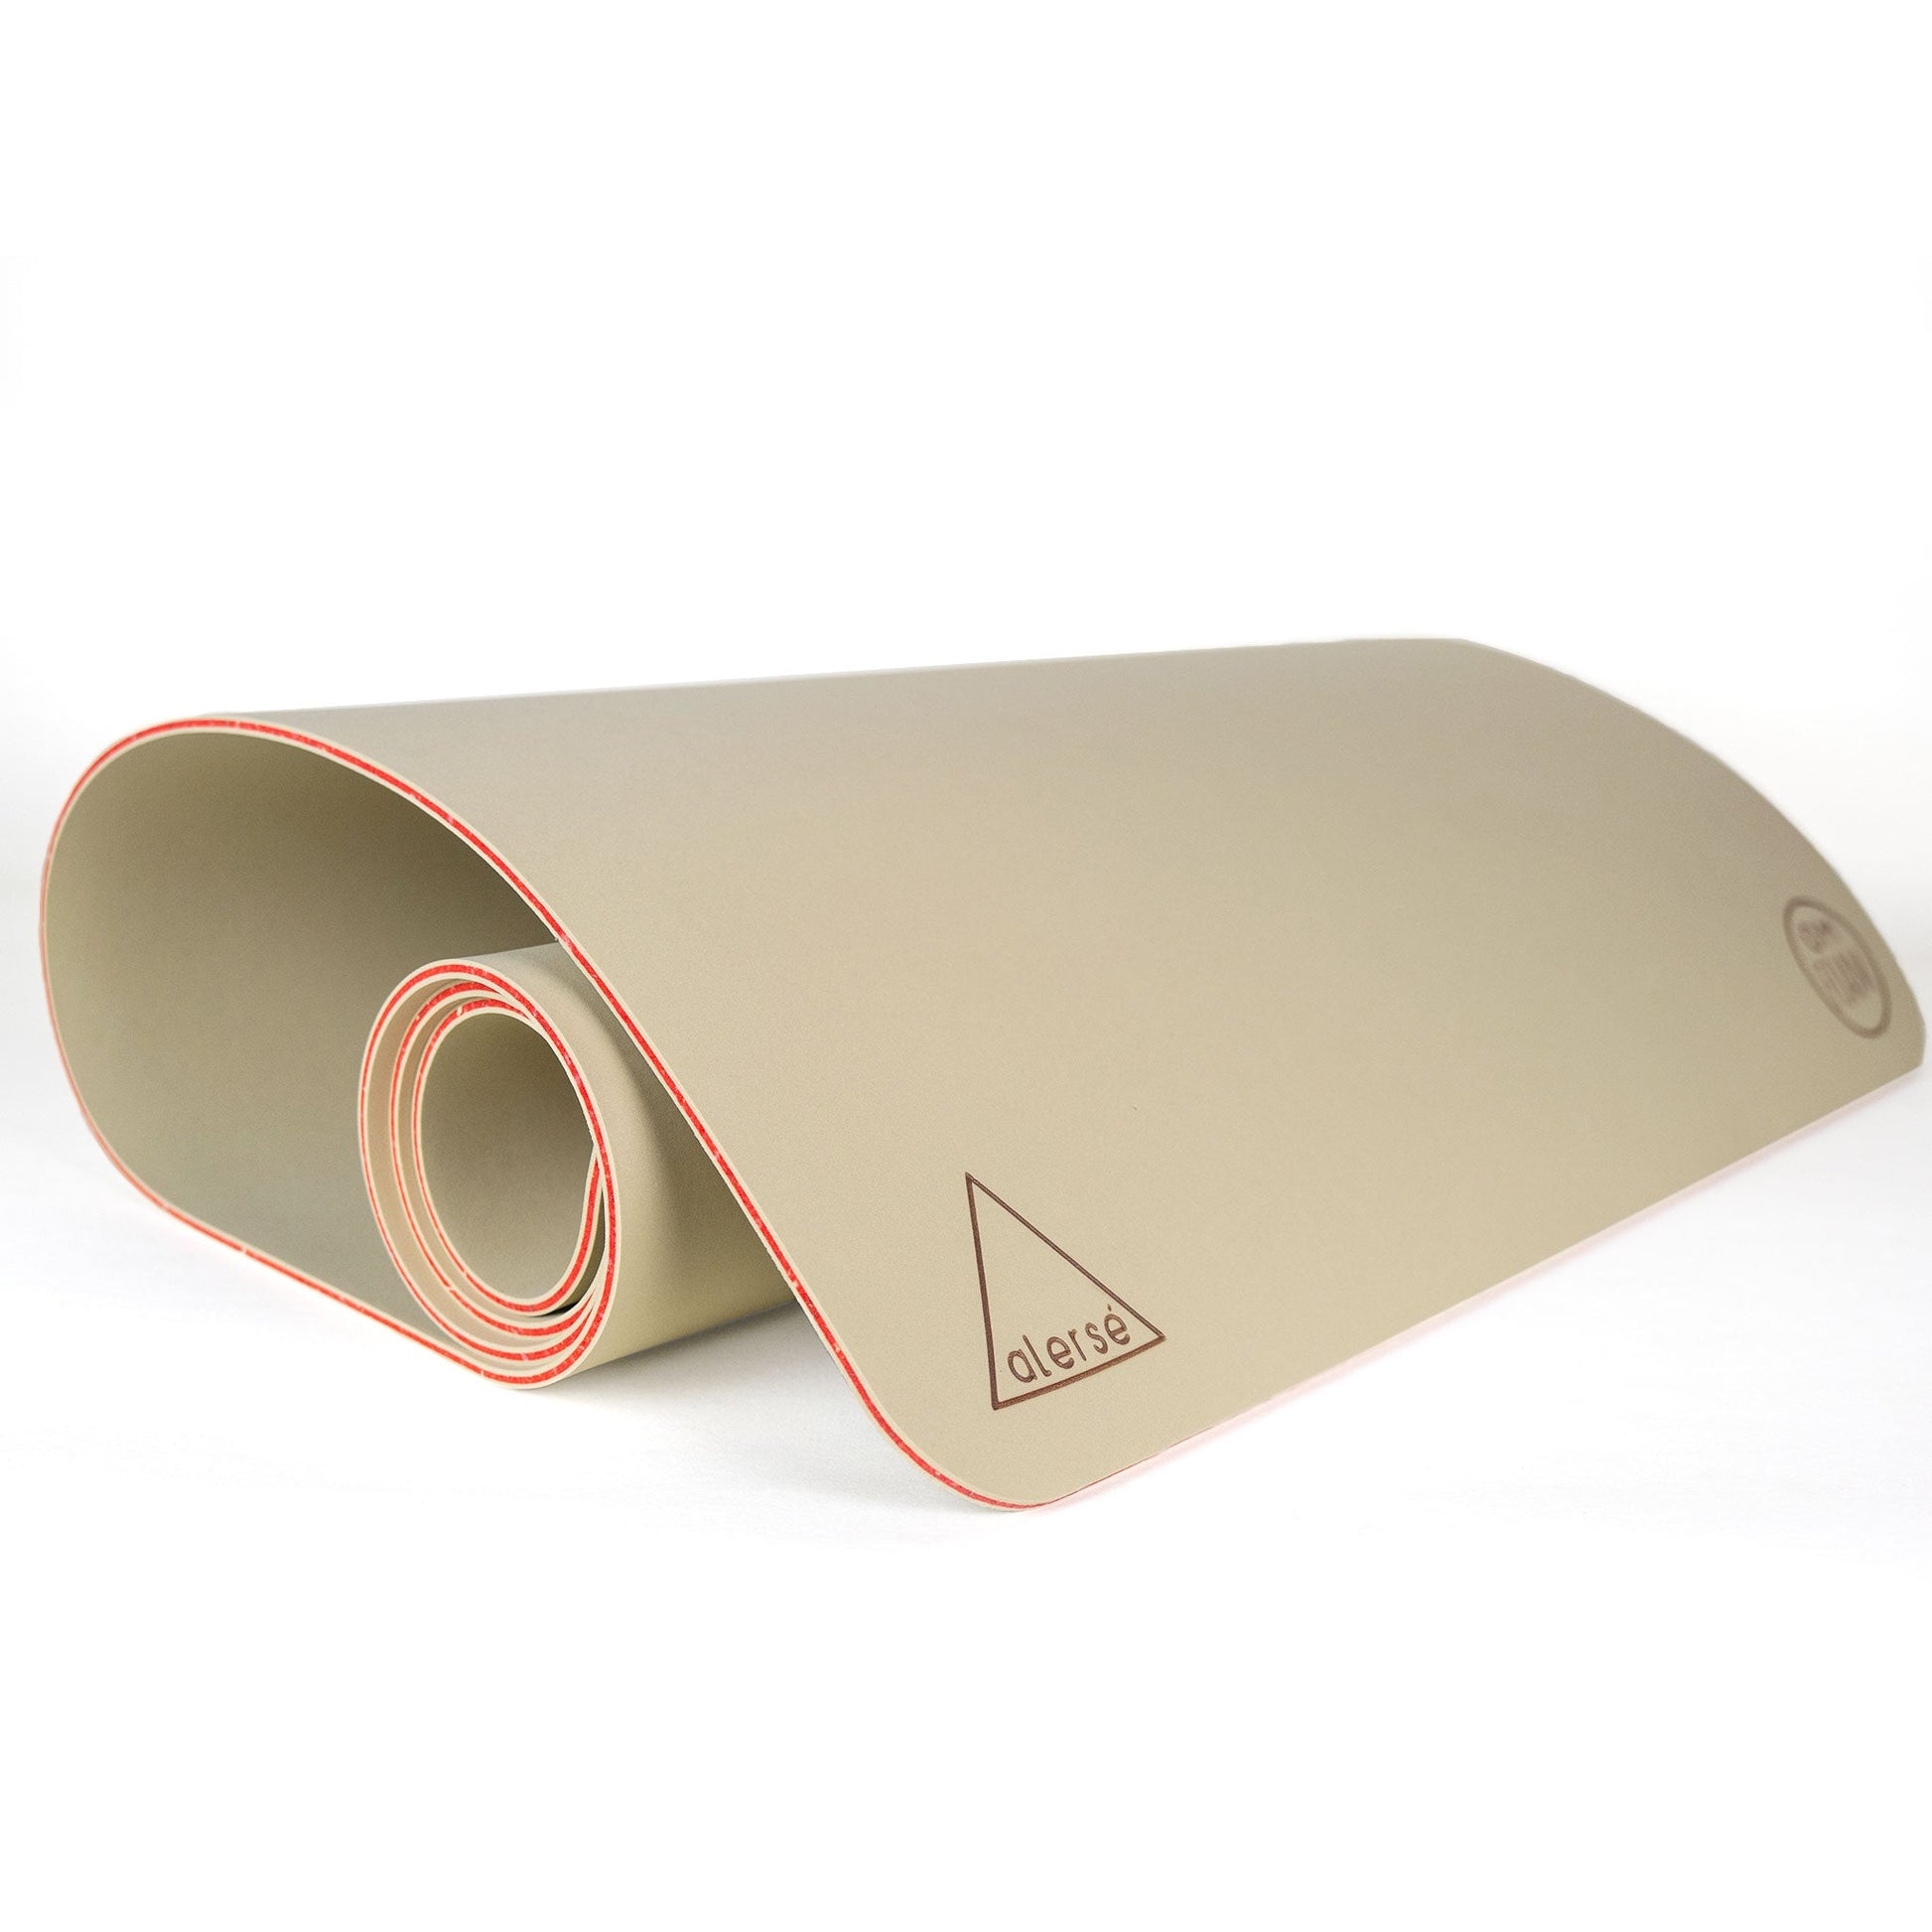 Premium 2-Color Yoga Mats (6mm)